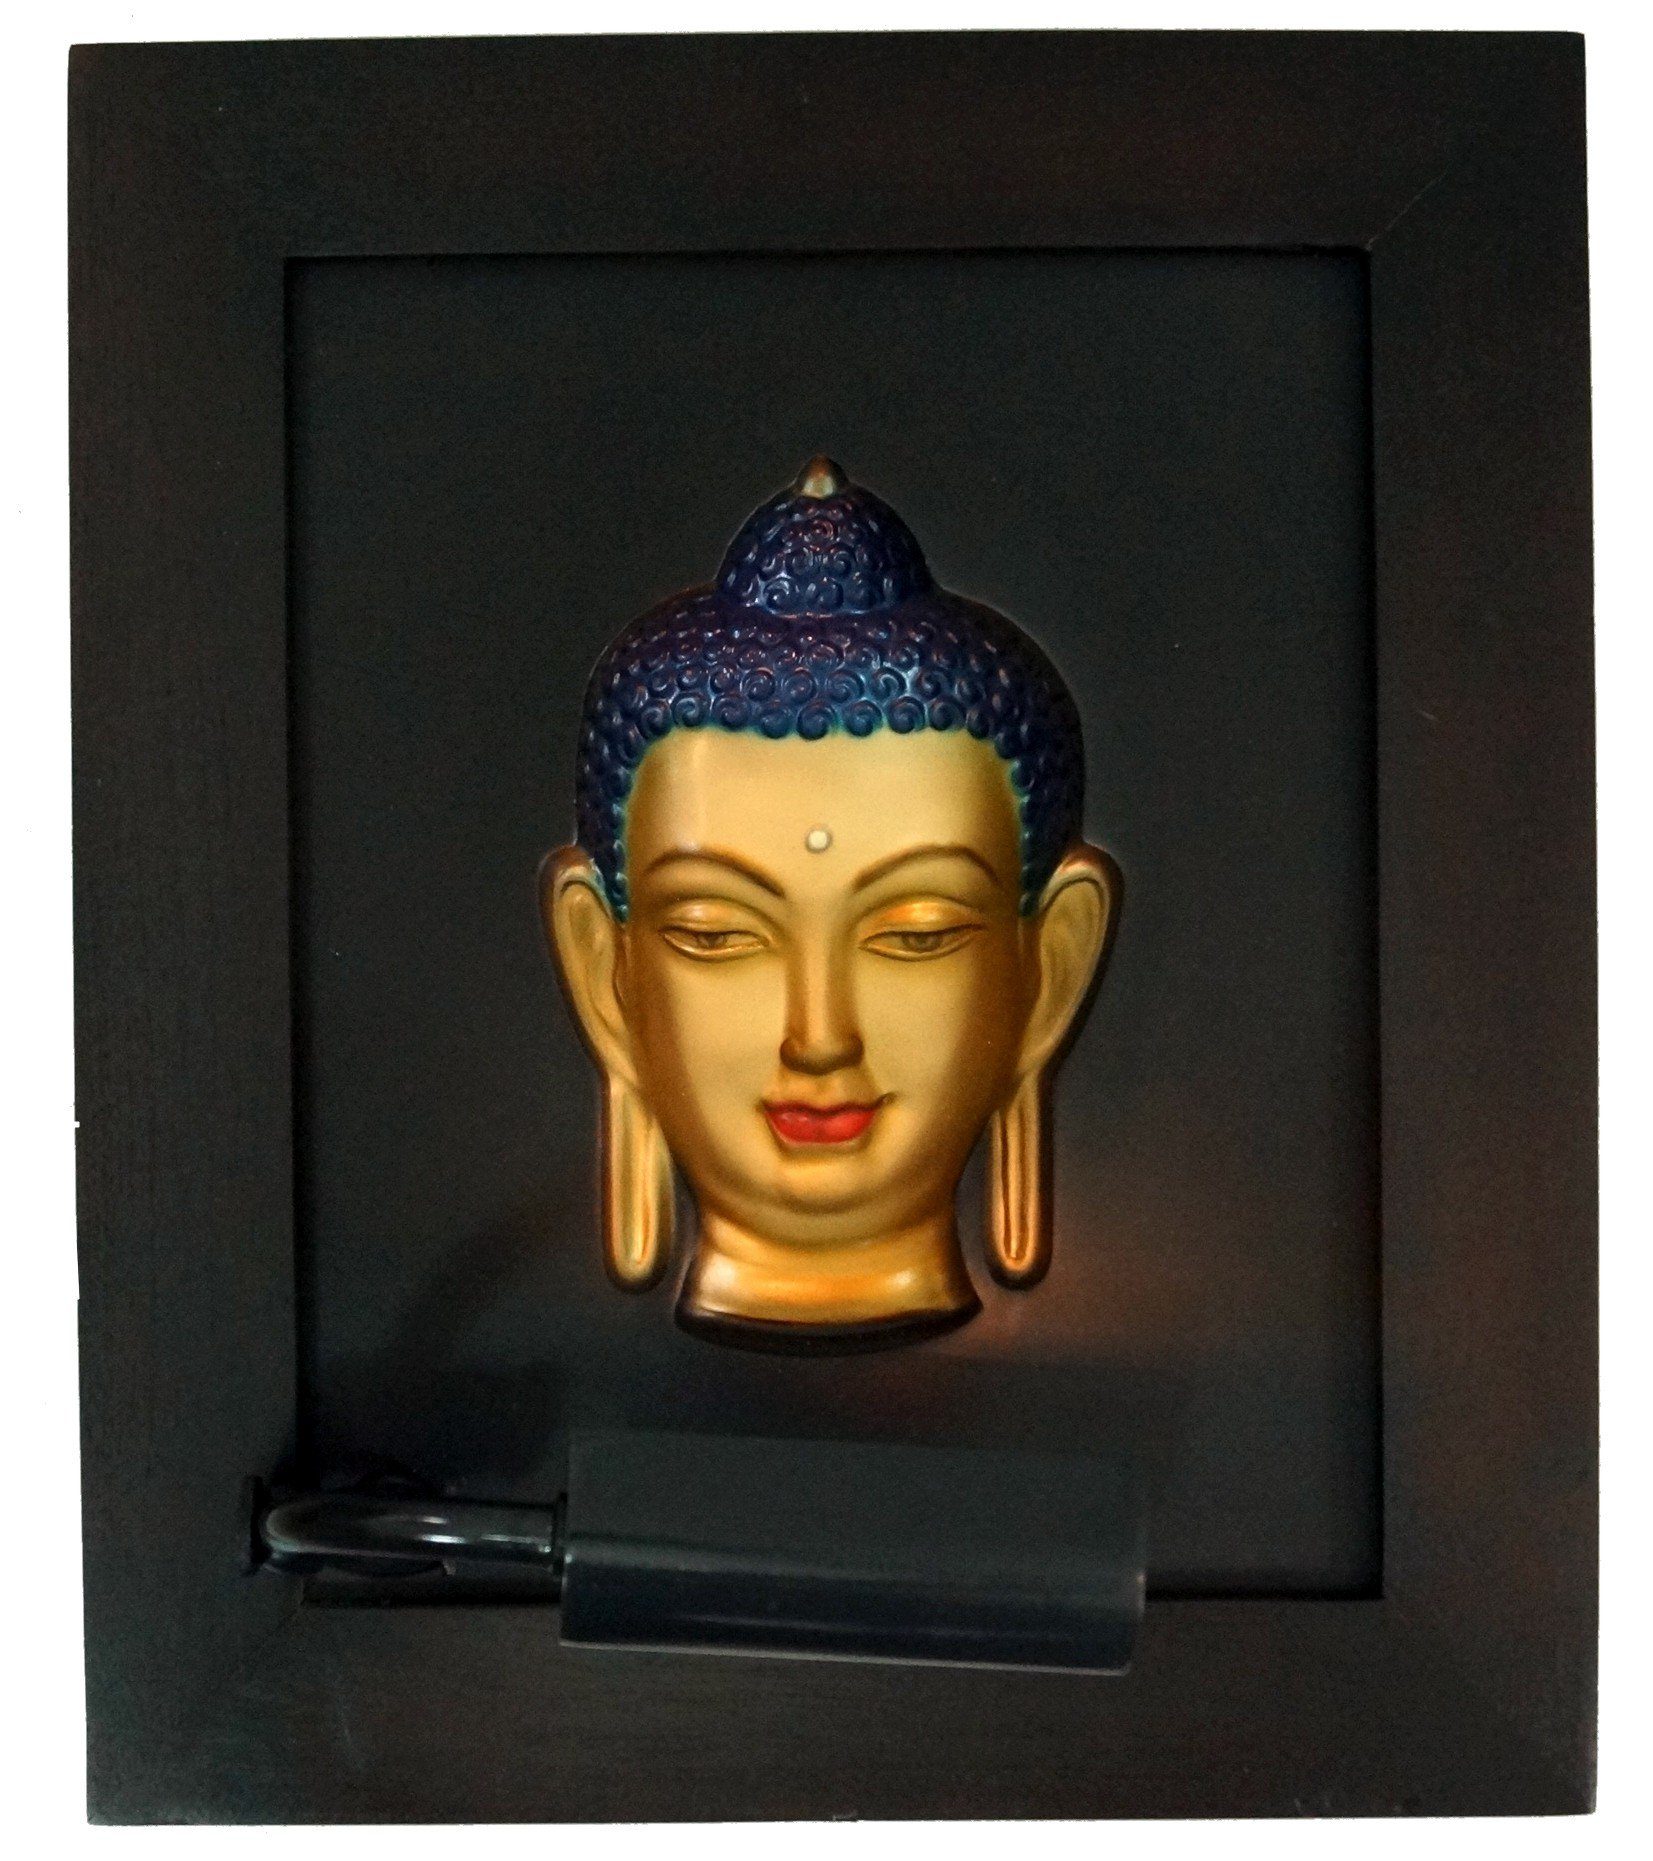 Hologramm Modell Guru-Shop - 3-D Buddhafigur Bild 6 Buddha